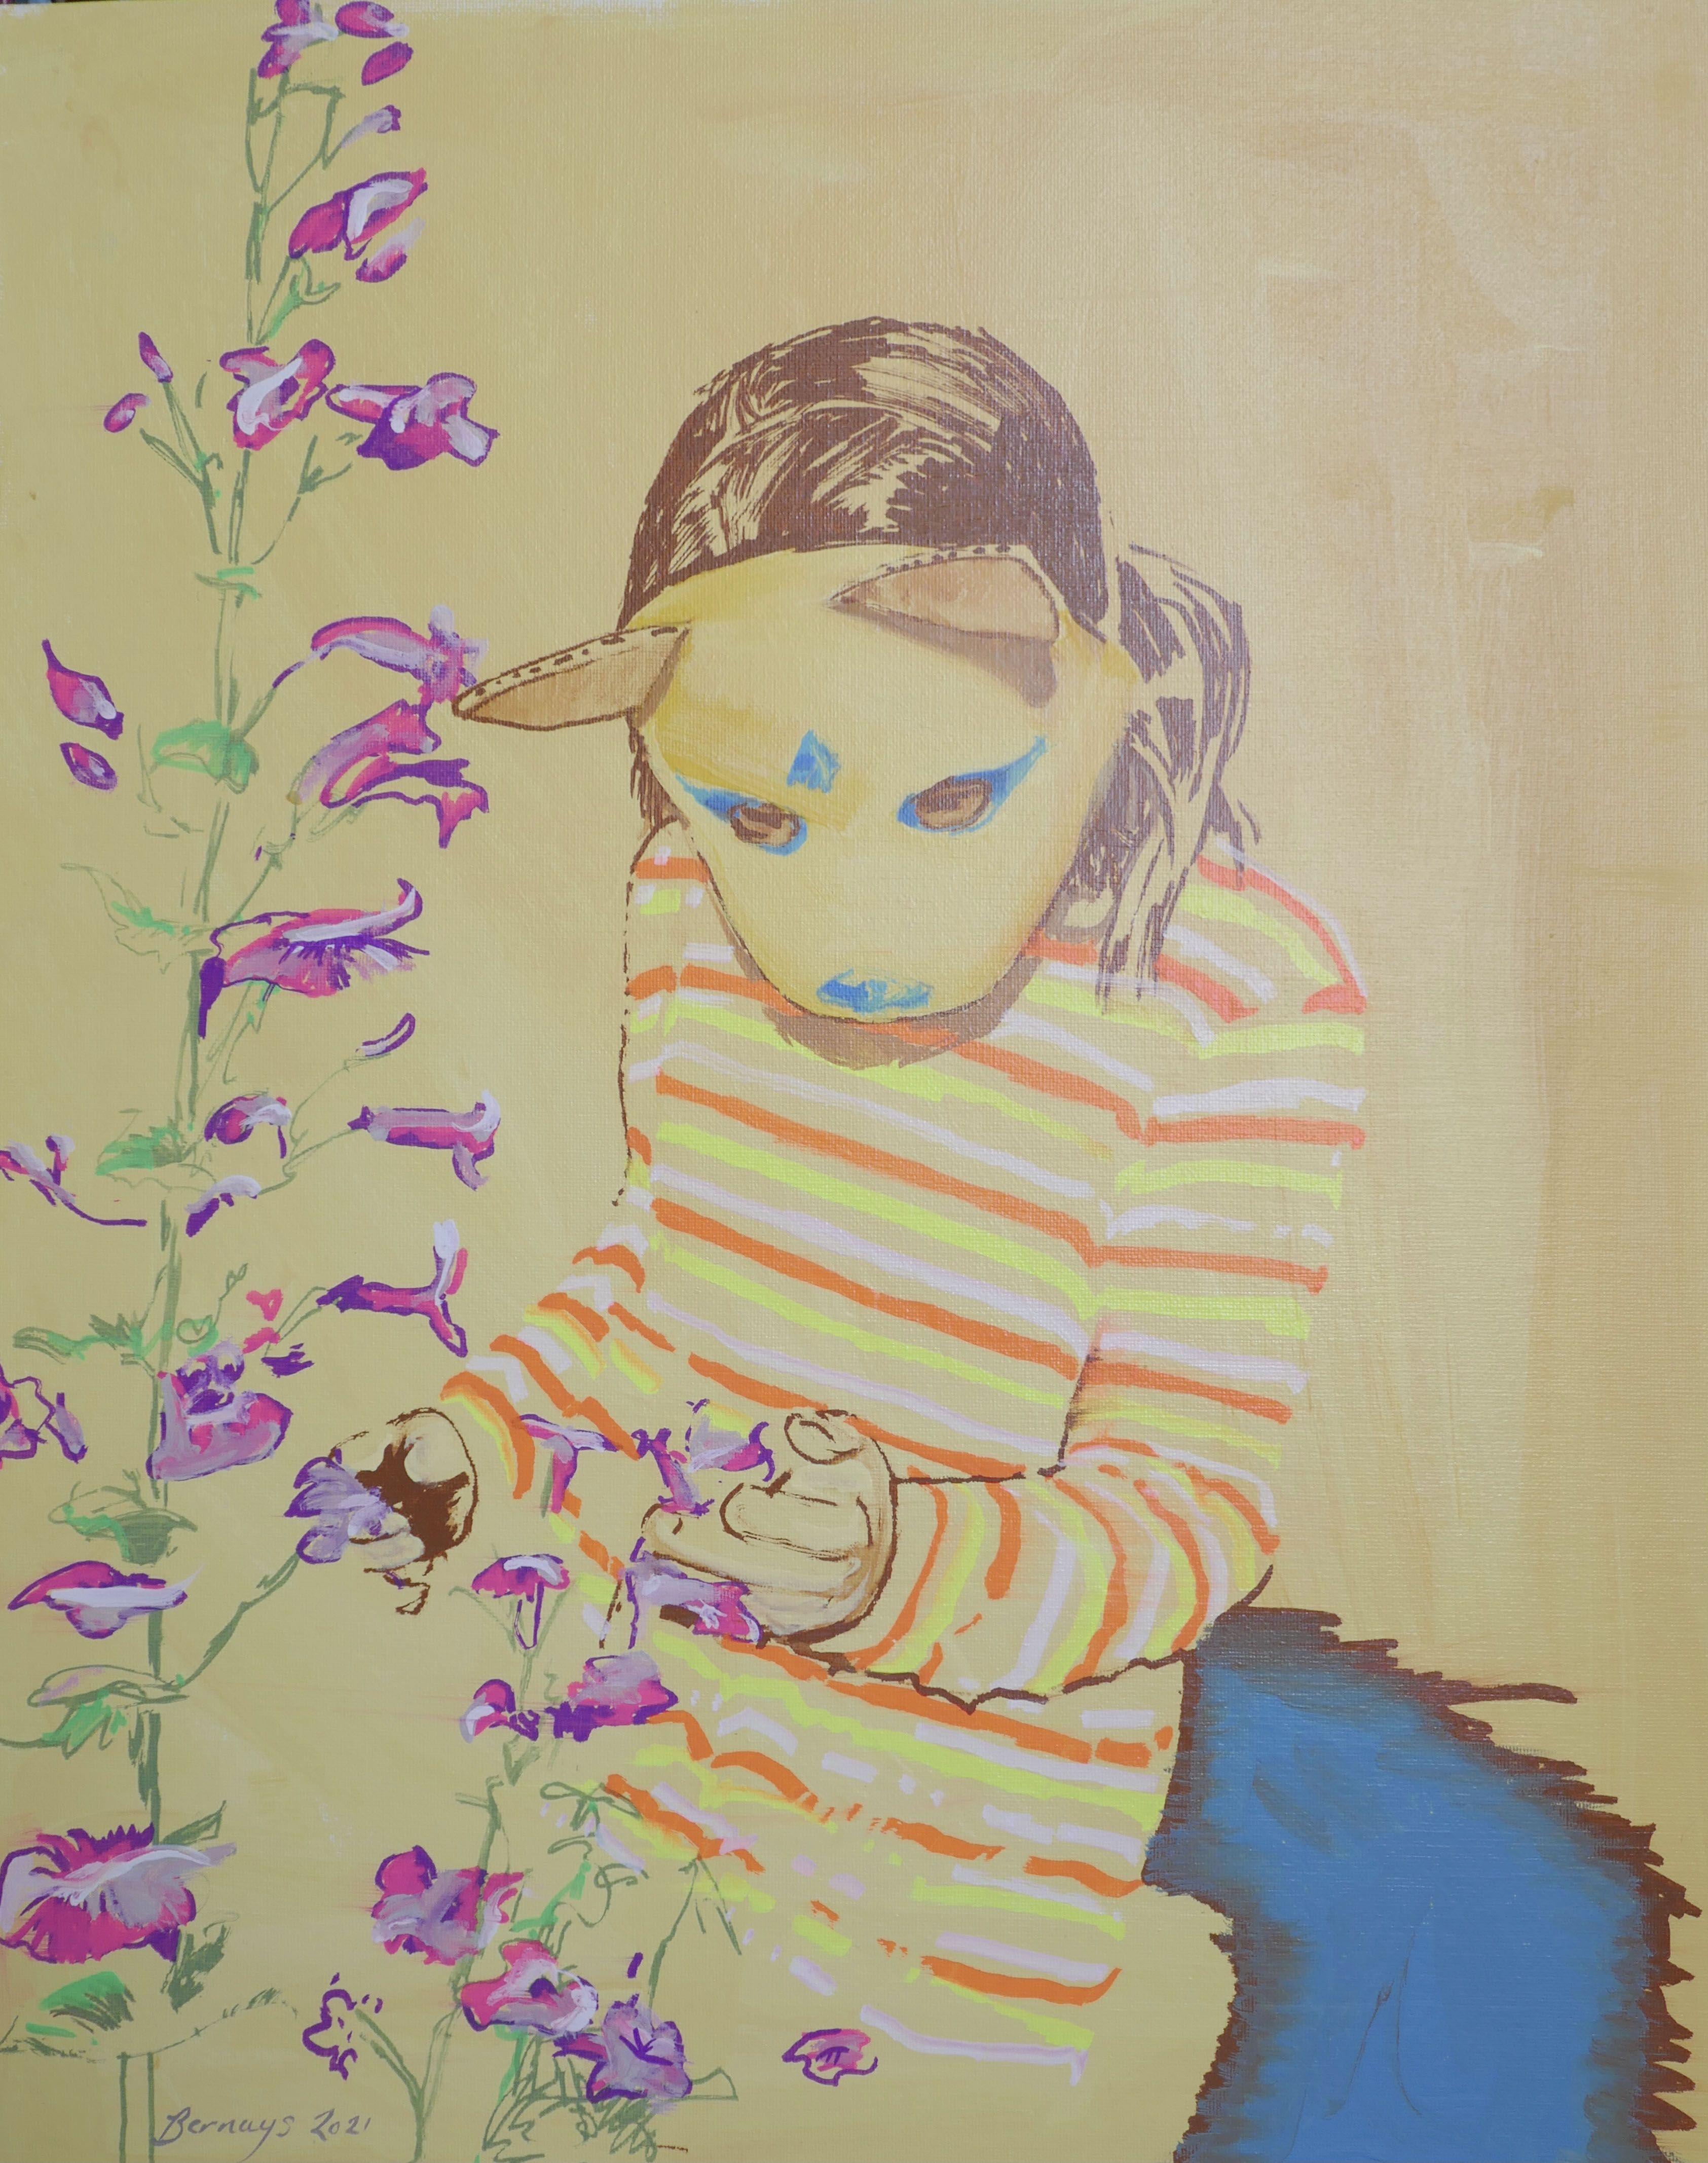 Comment sentir les fleurs avec un masque, peinture, acrylique sur toile - Painting de Amy Bernays